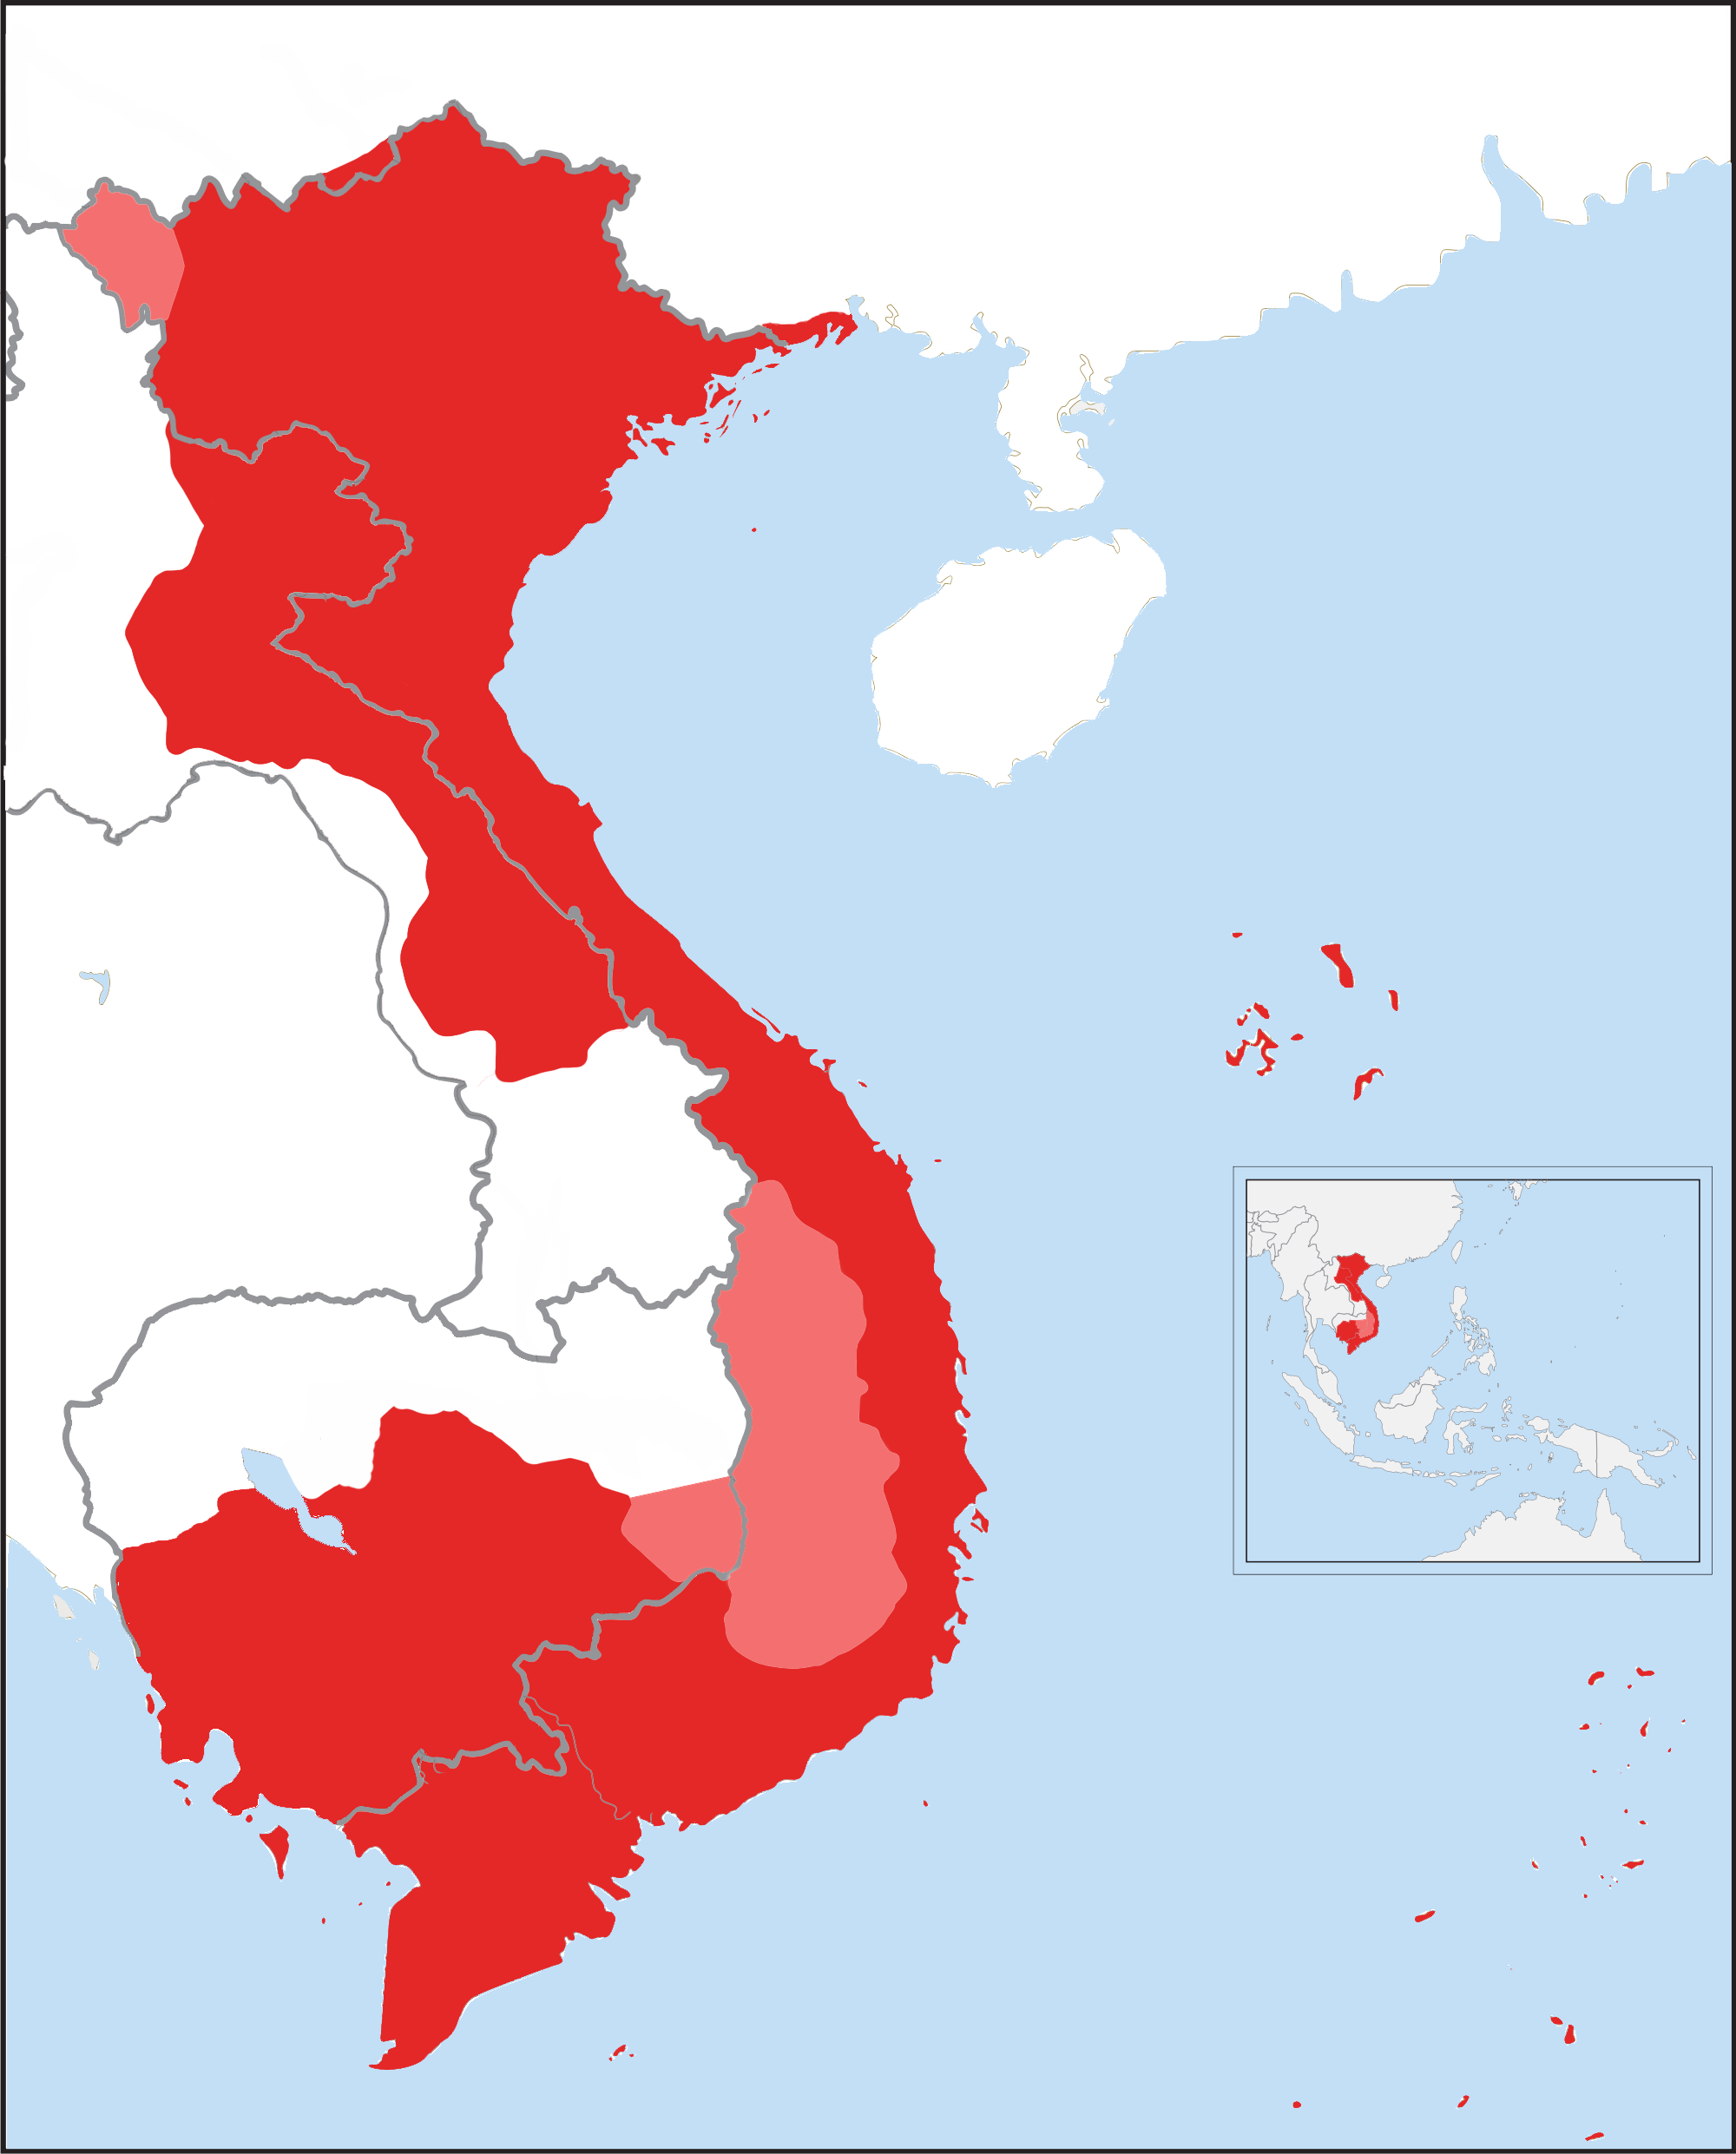 Quá Trình Mở Rộng Lãnh Thổ Của Việt Nam – Wikipedia Tiếng Việt